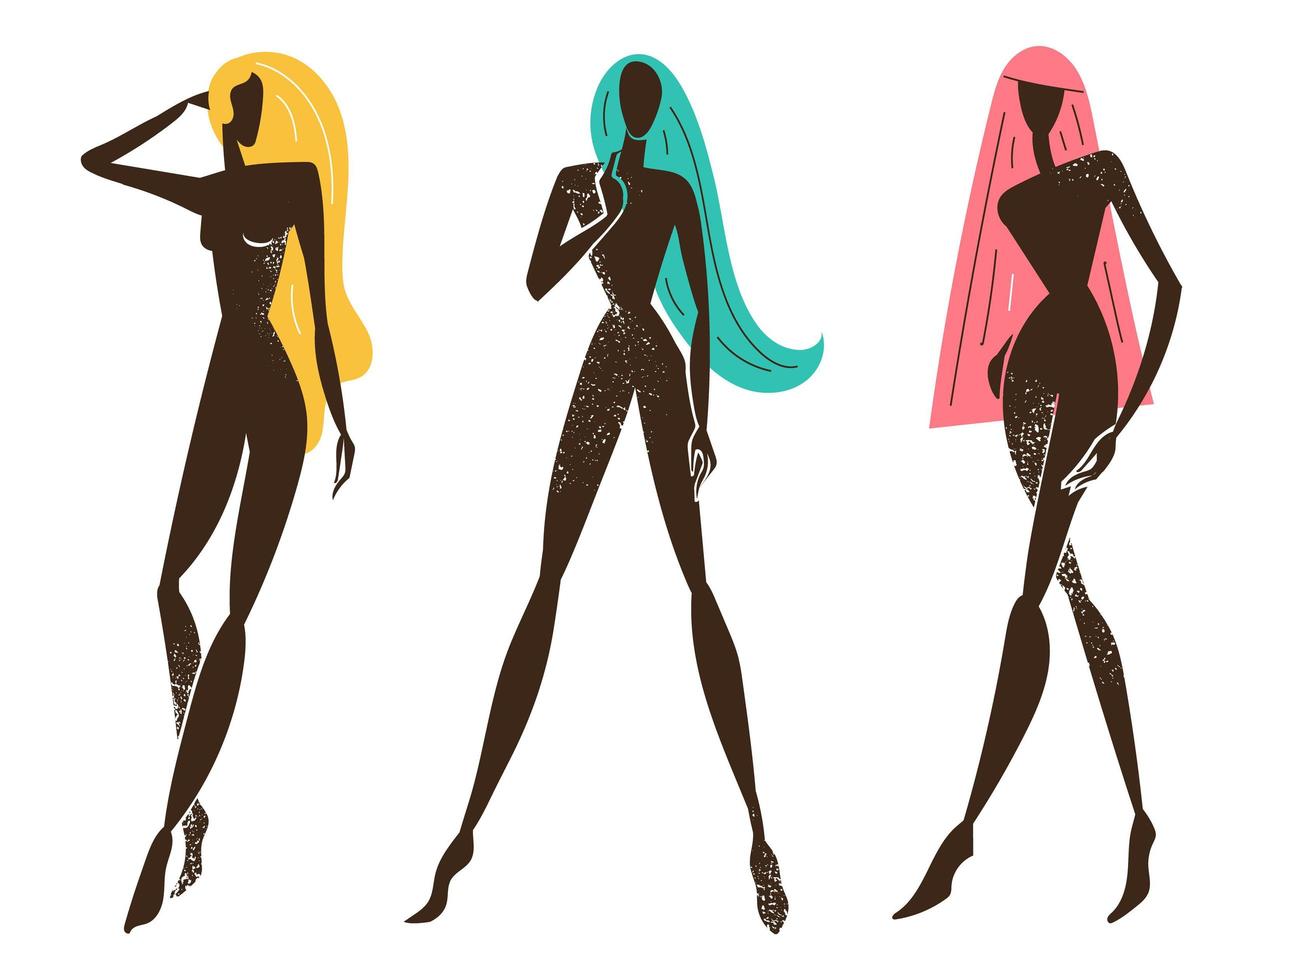 vektor uppsättning stiliserade kvinnor stående, långt hår, svarta texturerade silhuetter. feminina koncept, konst illustration. använd som affisch, tryck för t-shirt, designelement för skönhetsprodukter